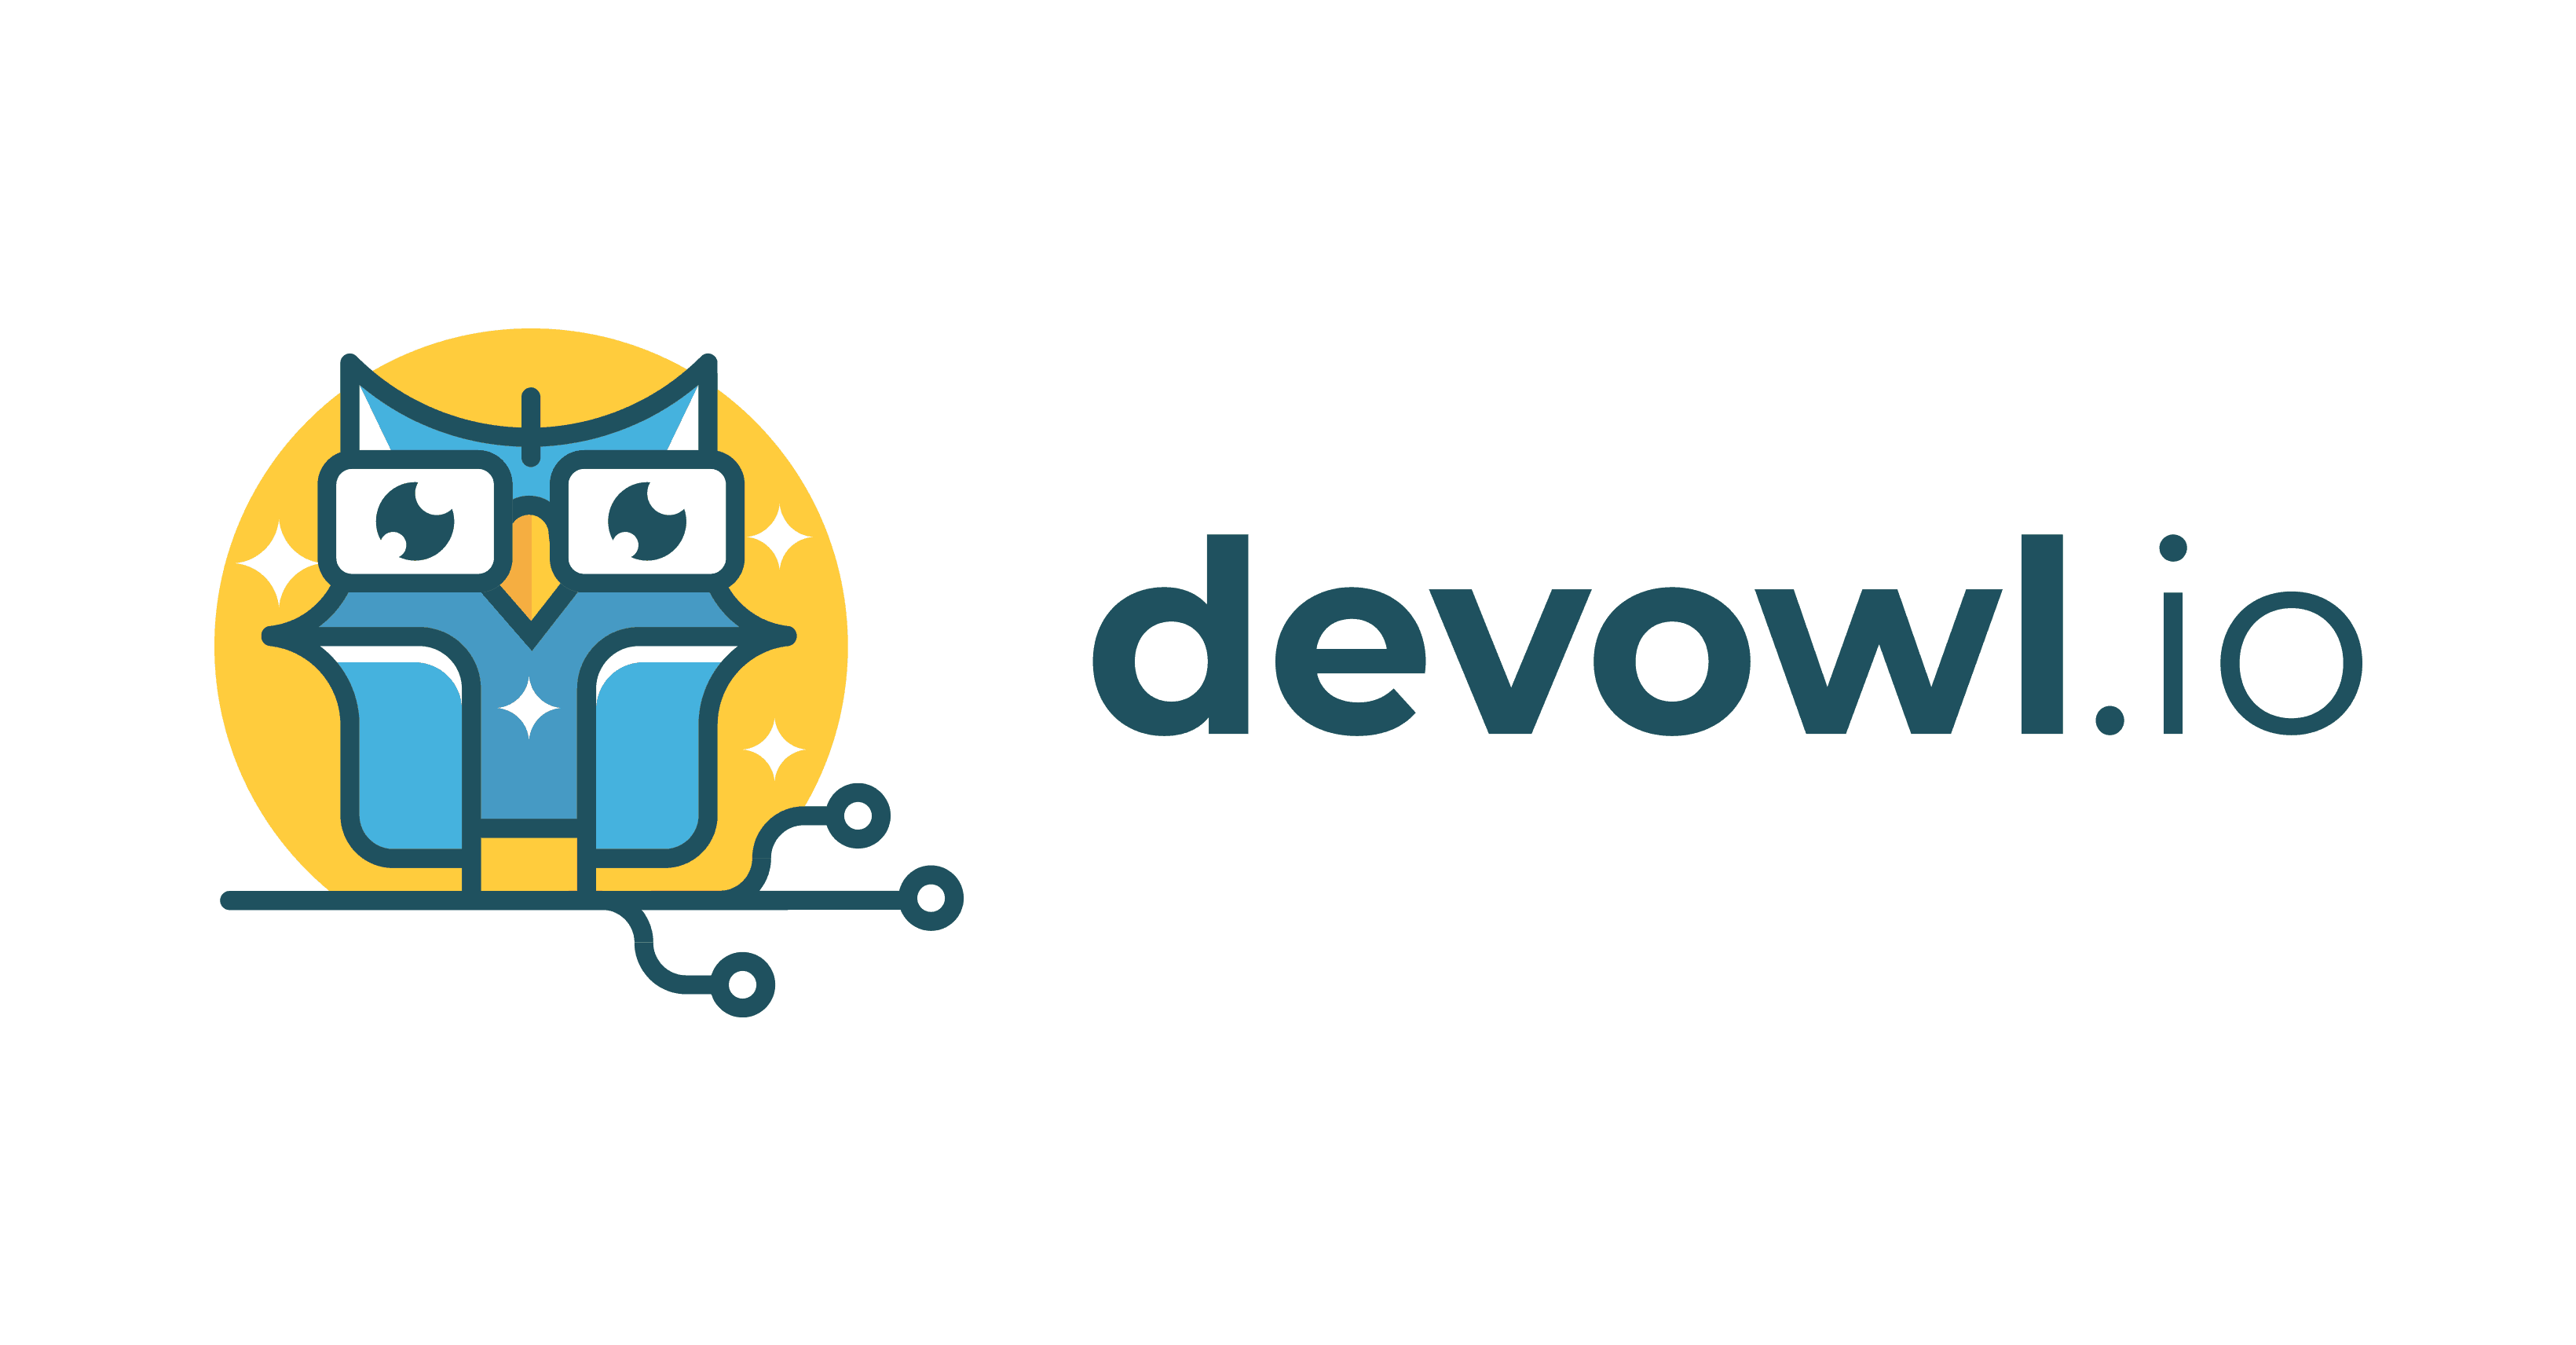 (c) Devowl.io